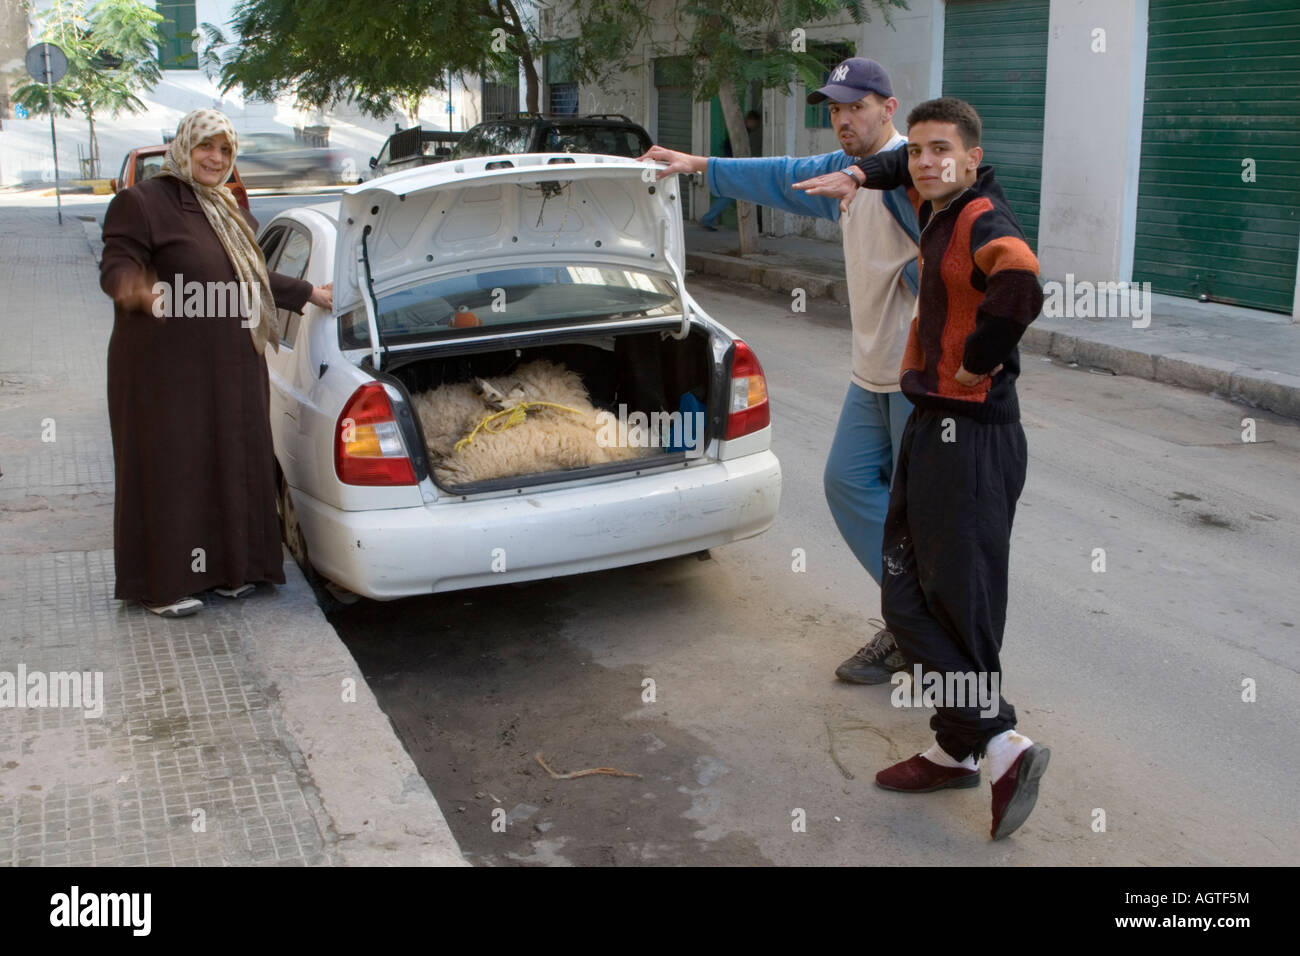 Tripolis Libyen Eid Al Adha Schaf Im Kofferraum Kofferraum Auf Dem Weg Zur Ihr Opfer Stockfotografie Alamy